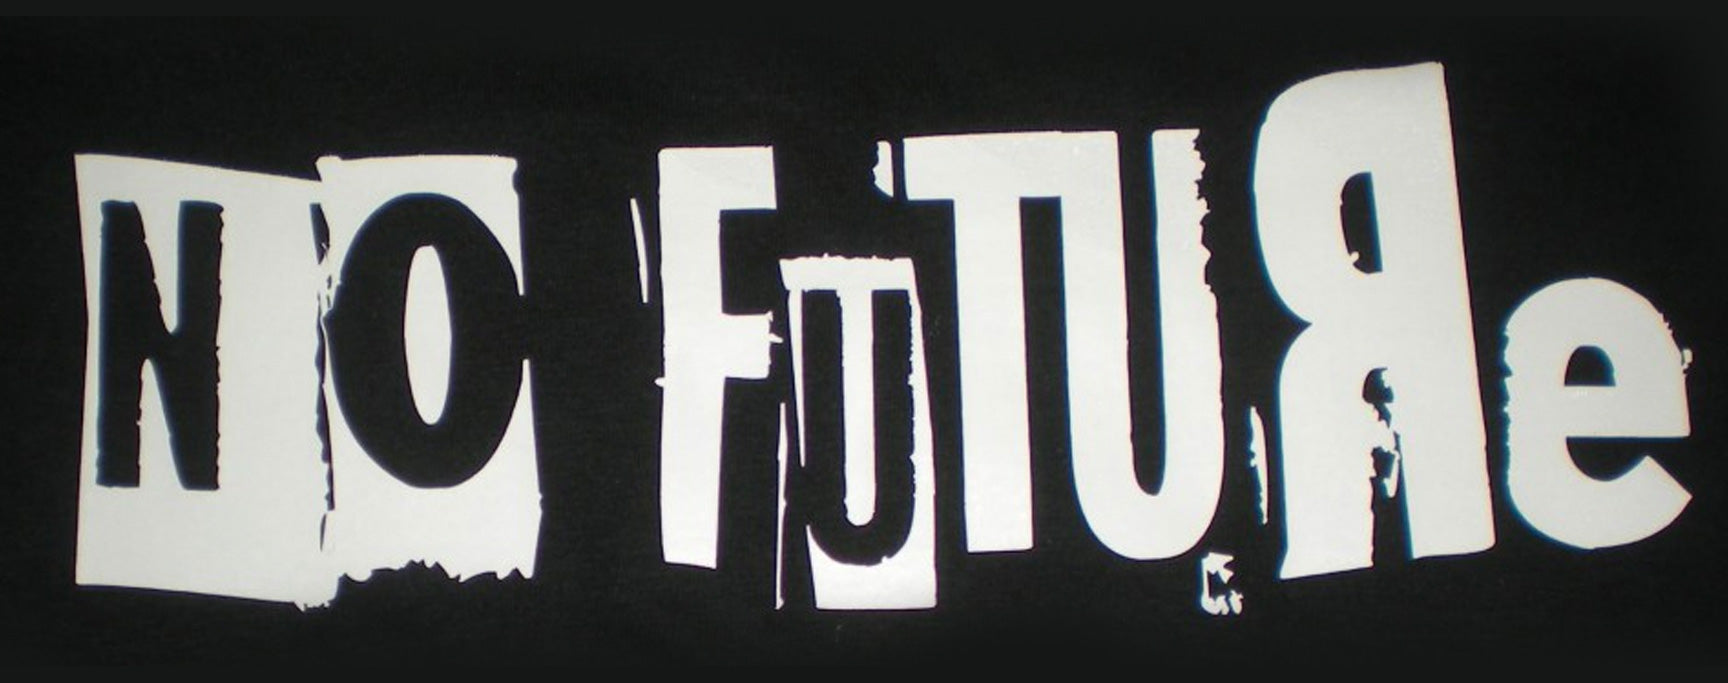 No future noir et blanc